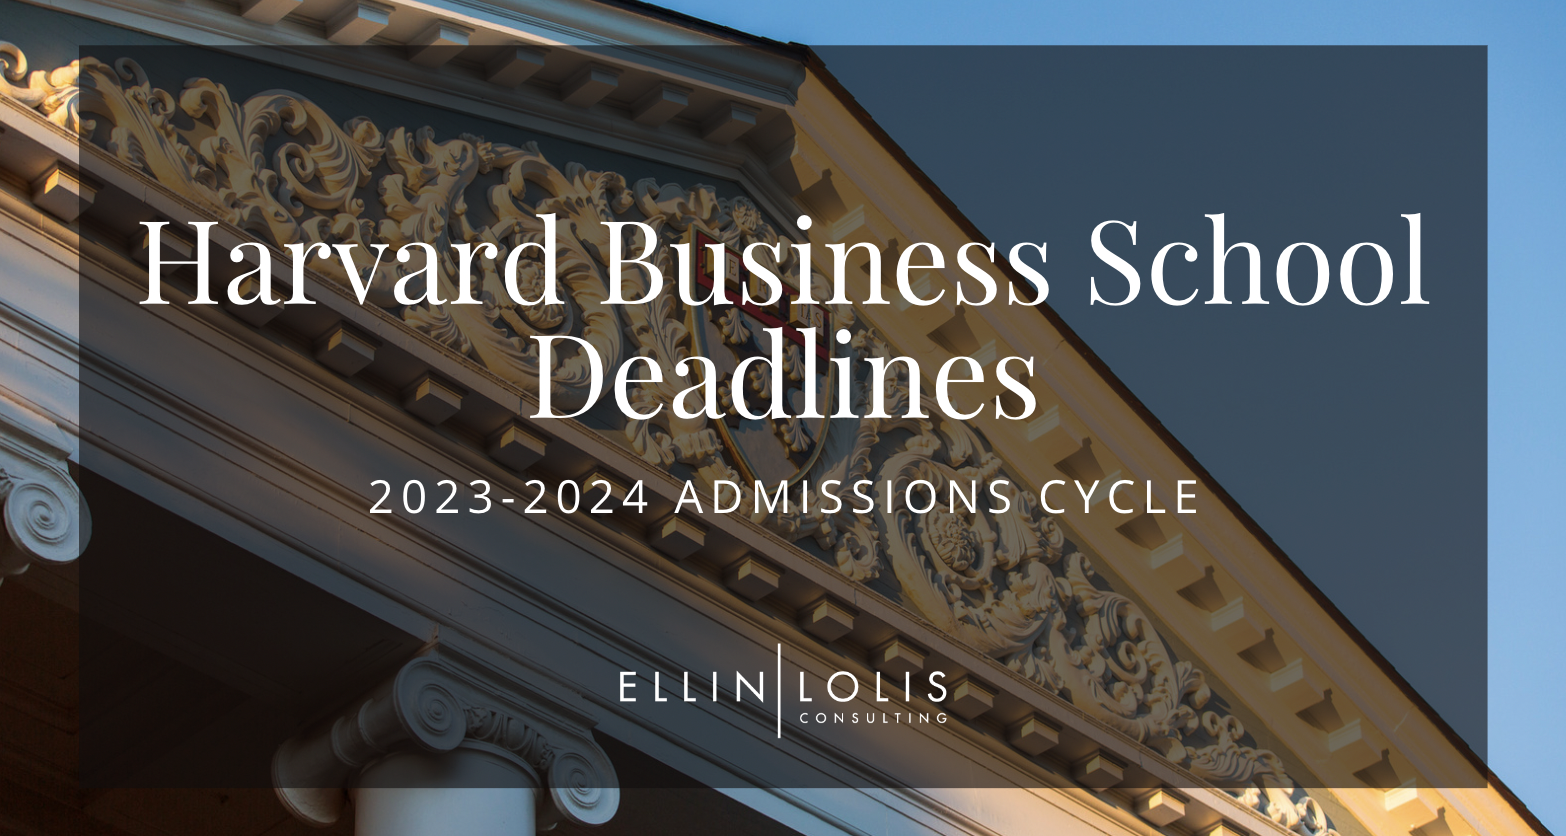 Harvard Business School MBA Deadlines for 2023-2024